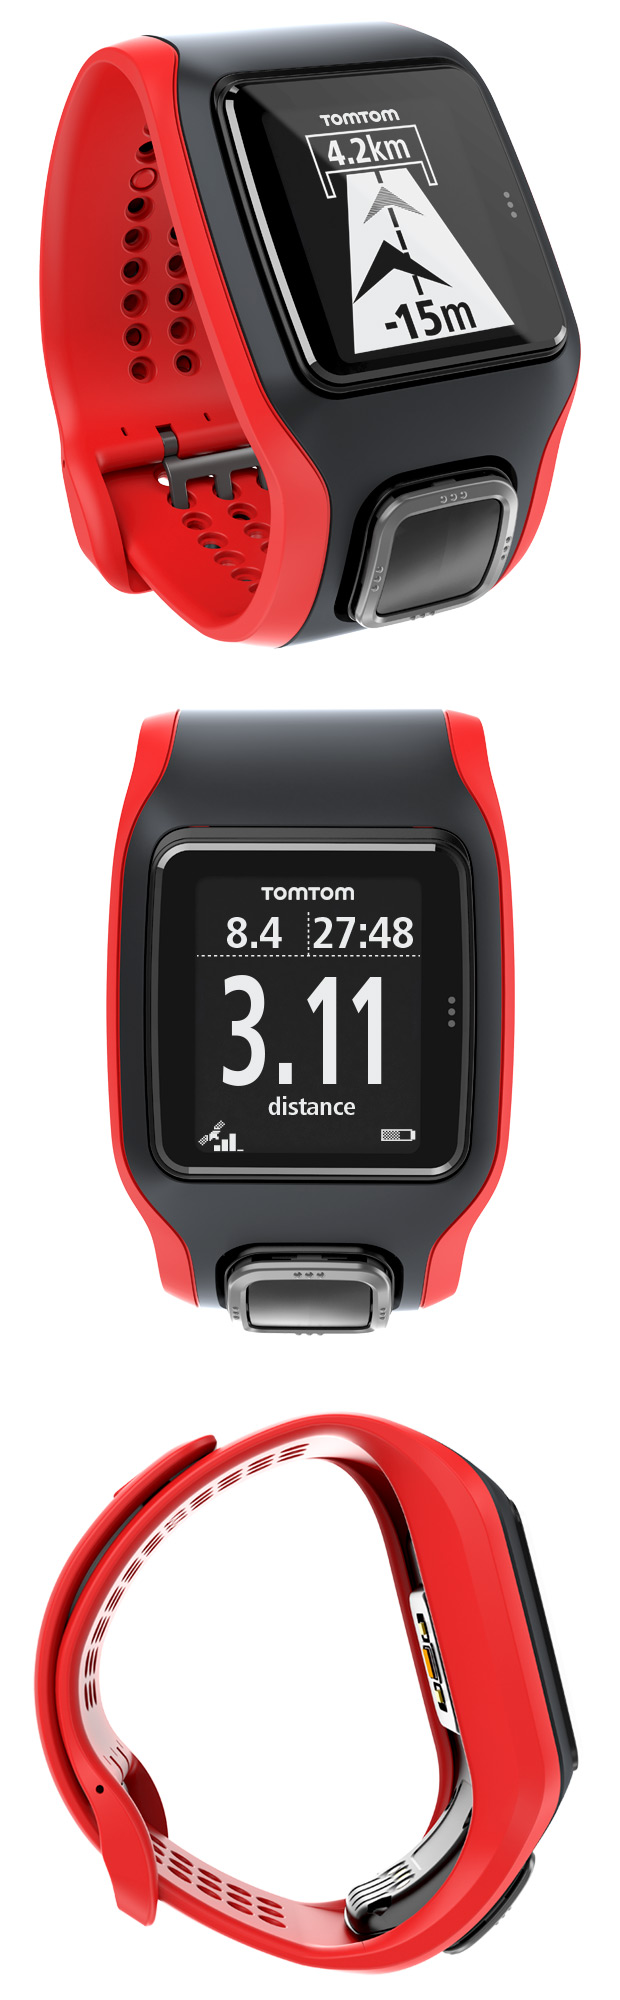 TomTom Multi-Sport Cardio: Un nuevo reloj GPS inteligente con pulsómetro integrado